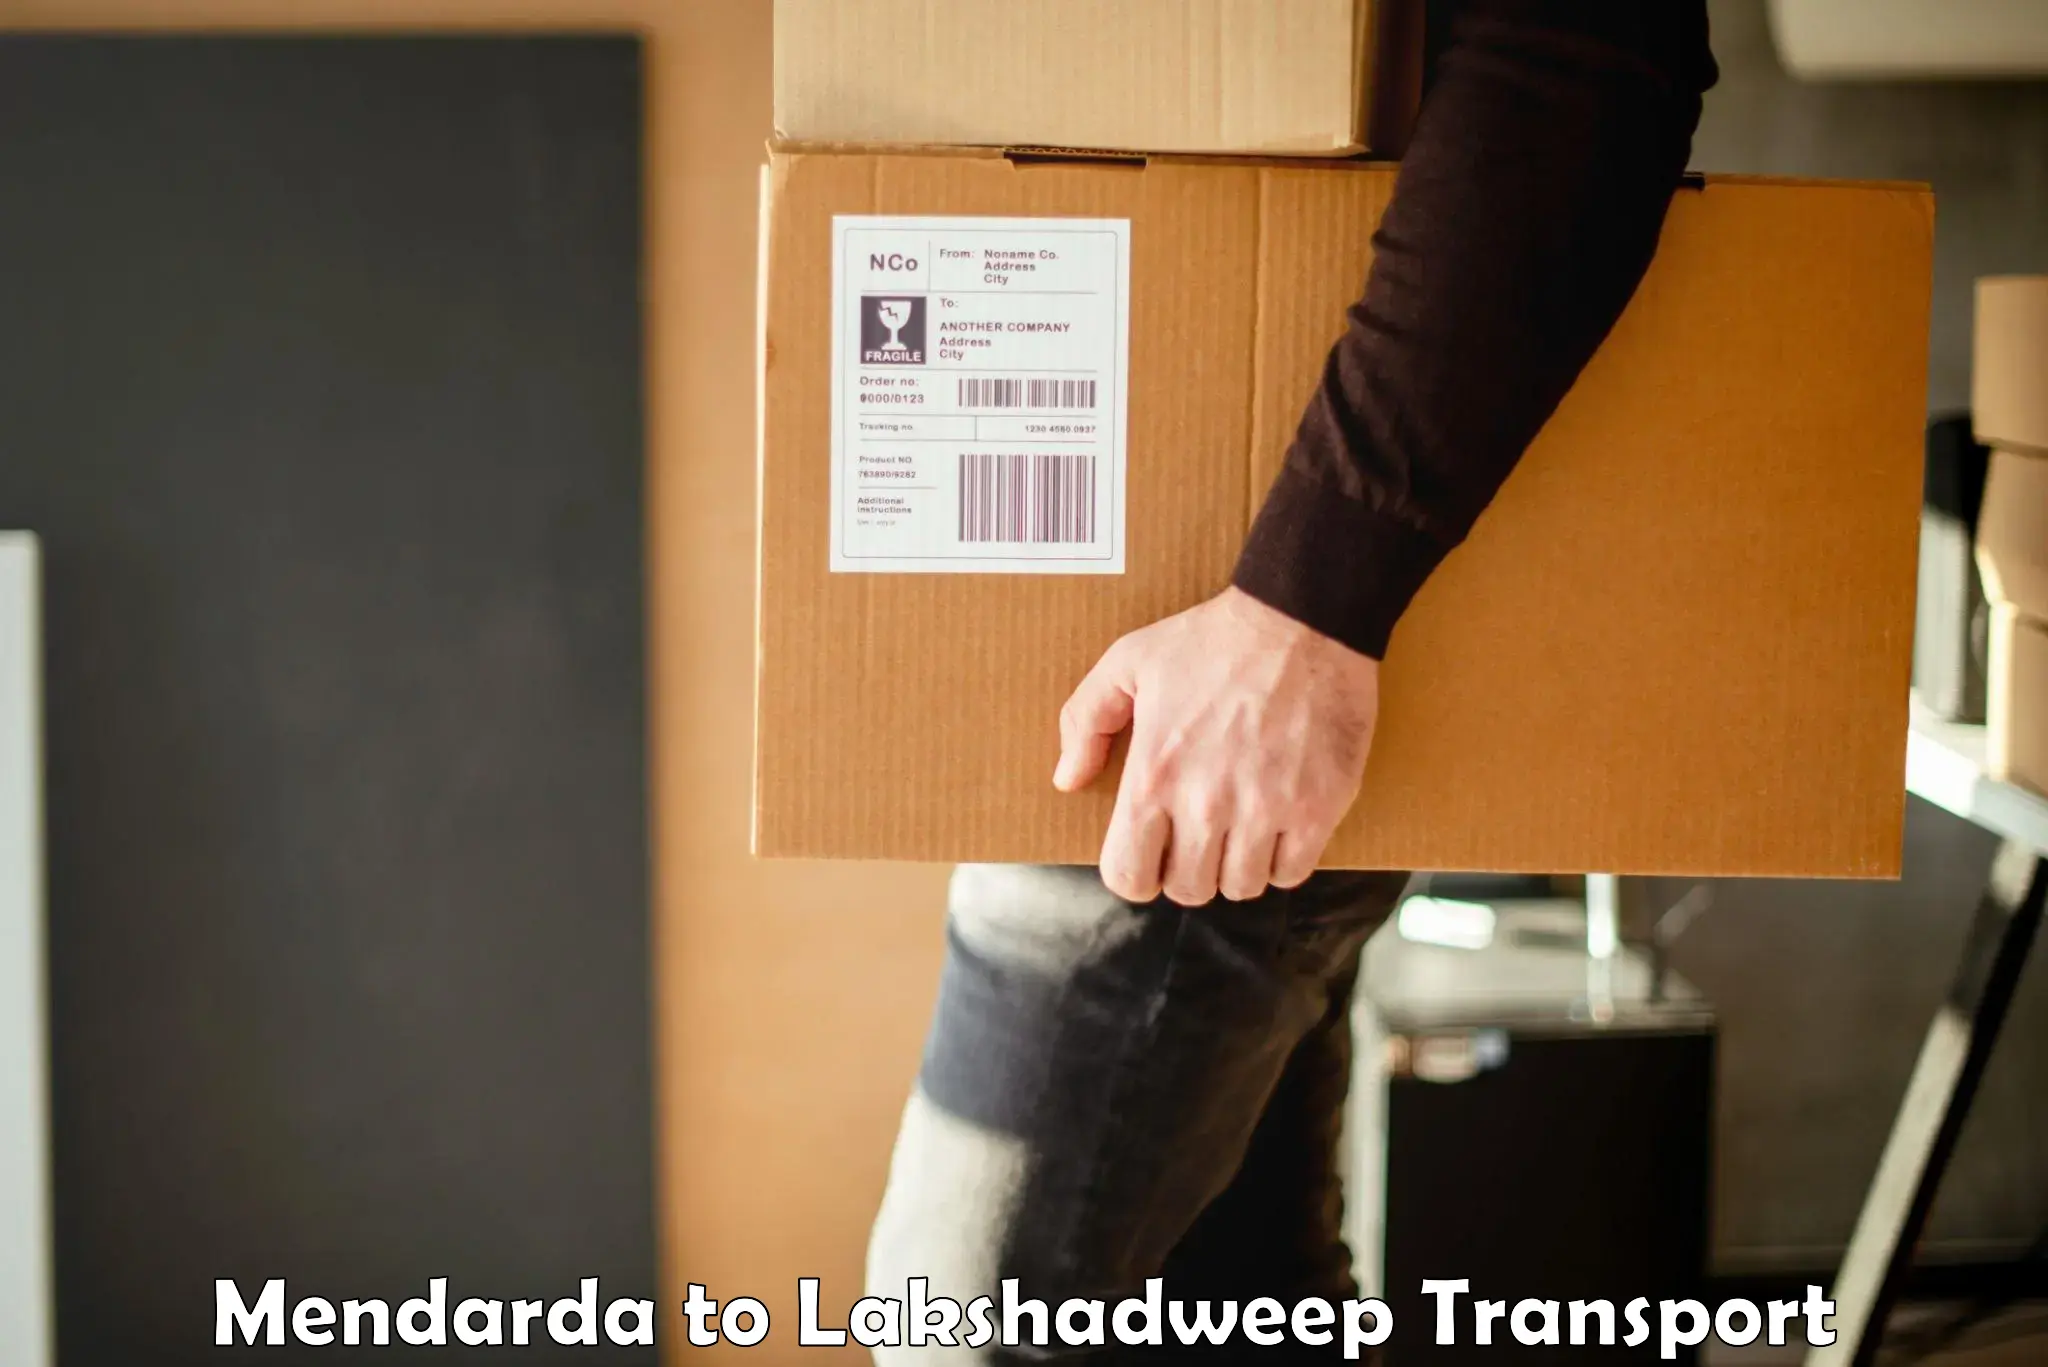 Transport in sharing Mendarda to Lakshadweep